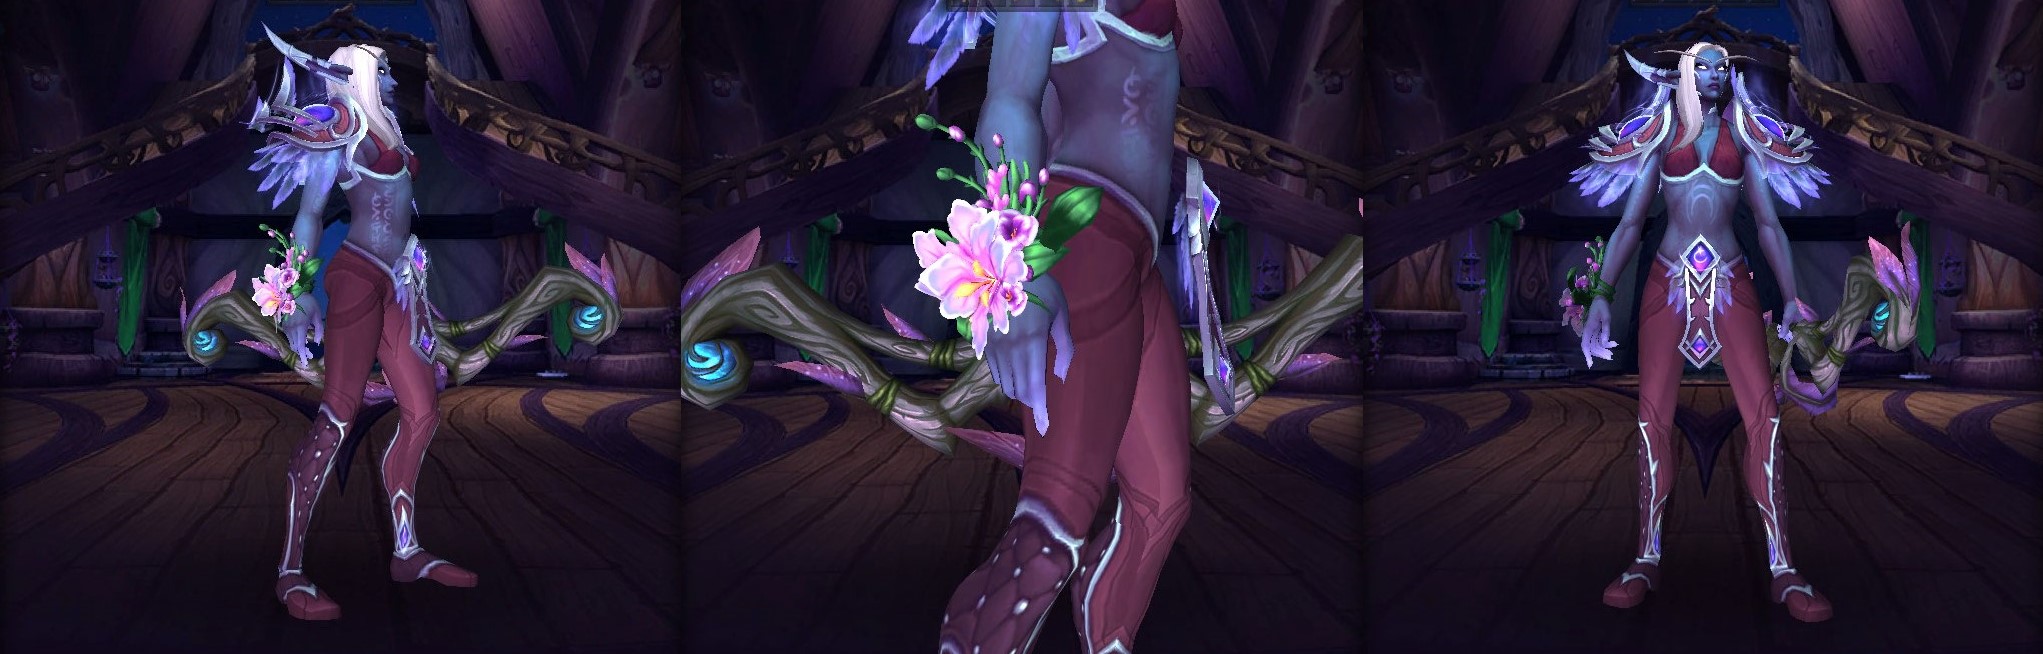 Memory of Ysera - Flower Bracelet Transmog Found in Dragonflight thumbnail